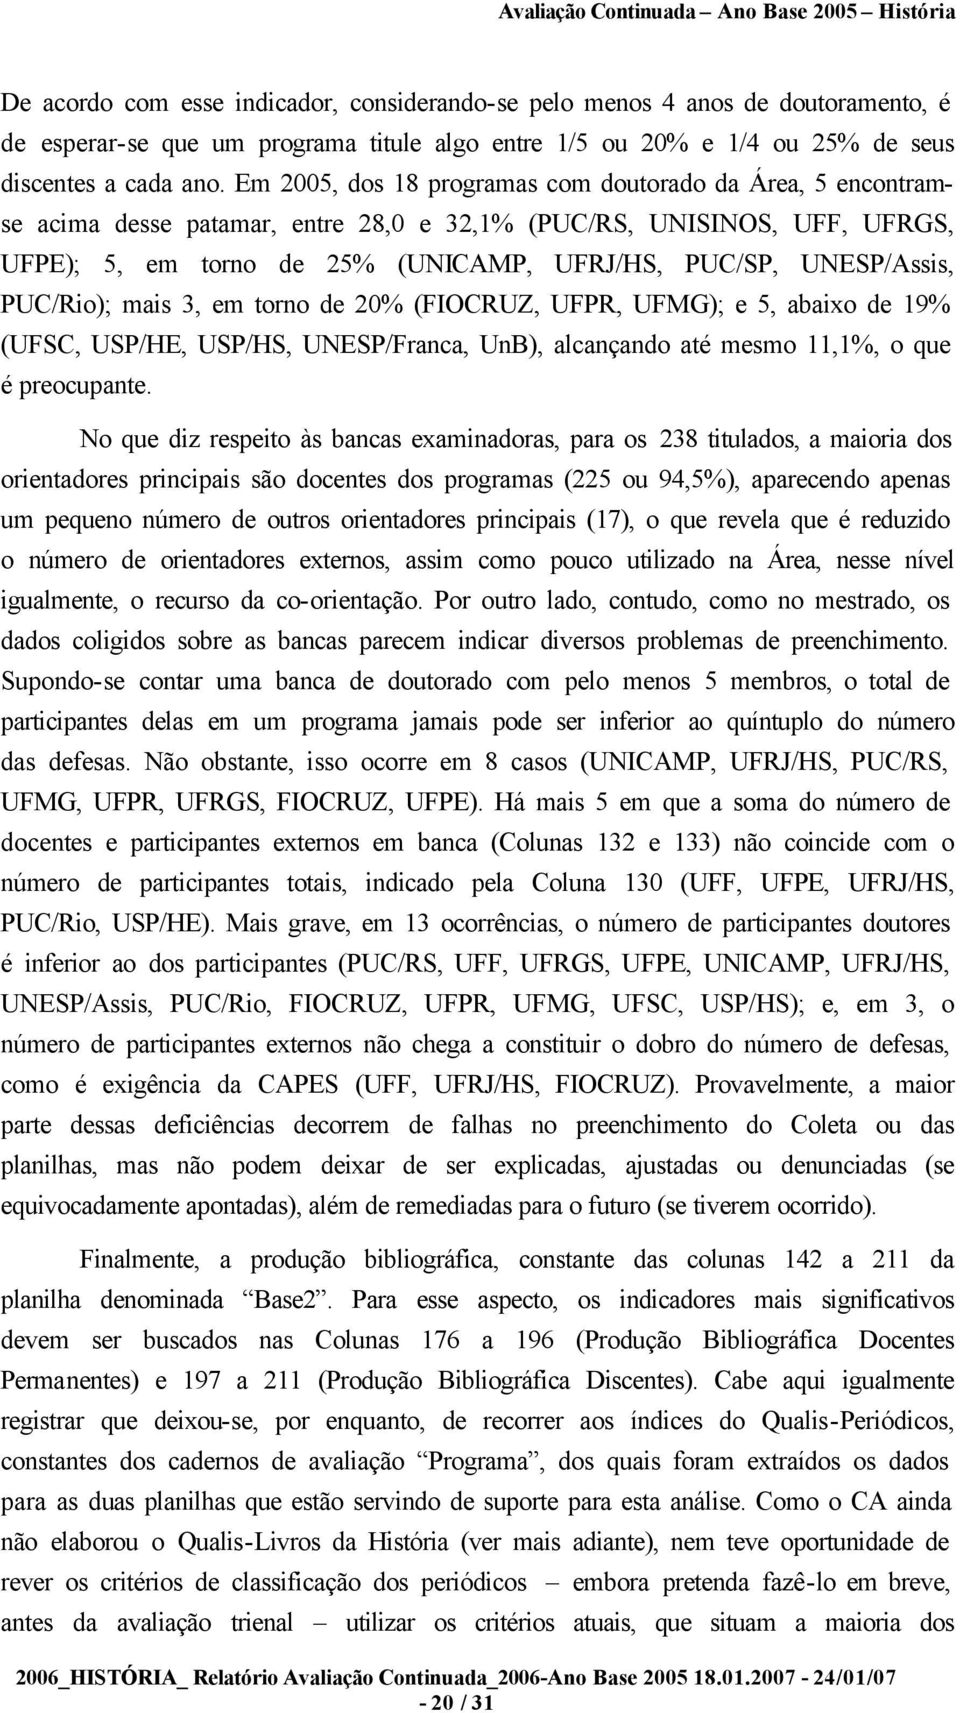 PUC/Rio); mais 3, em torno de 20% (FIOCRUZ, UFPR, UFMG); e 5, abaixo de 19% (UFSC, USP/HE, USP/HS, UNESP/Franca, UnB), alcançando até mesmo 11,1%, o que é preocupante.